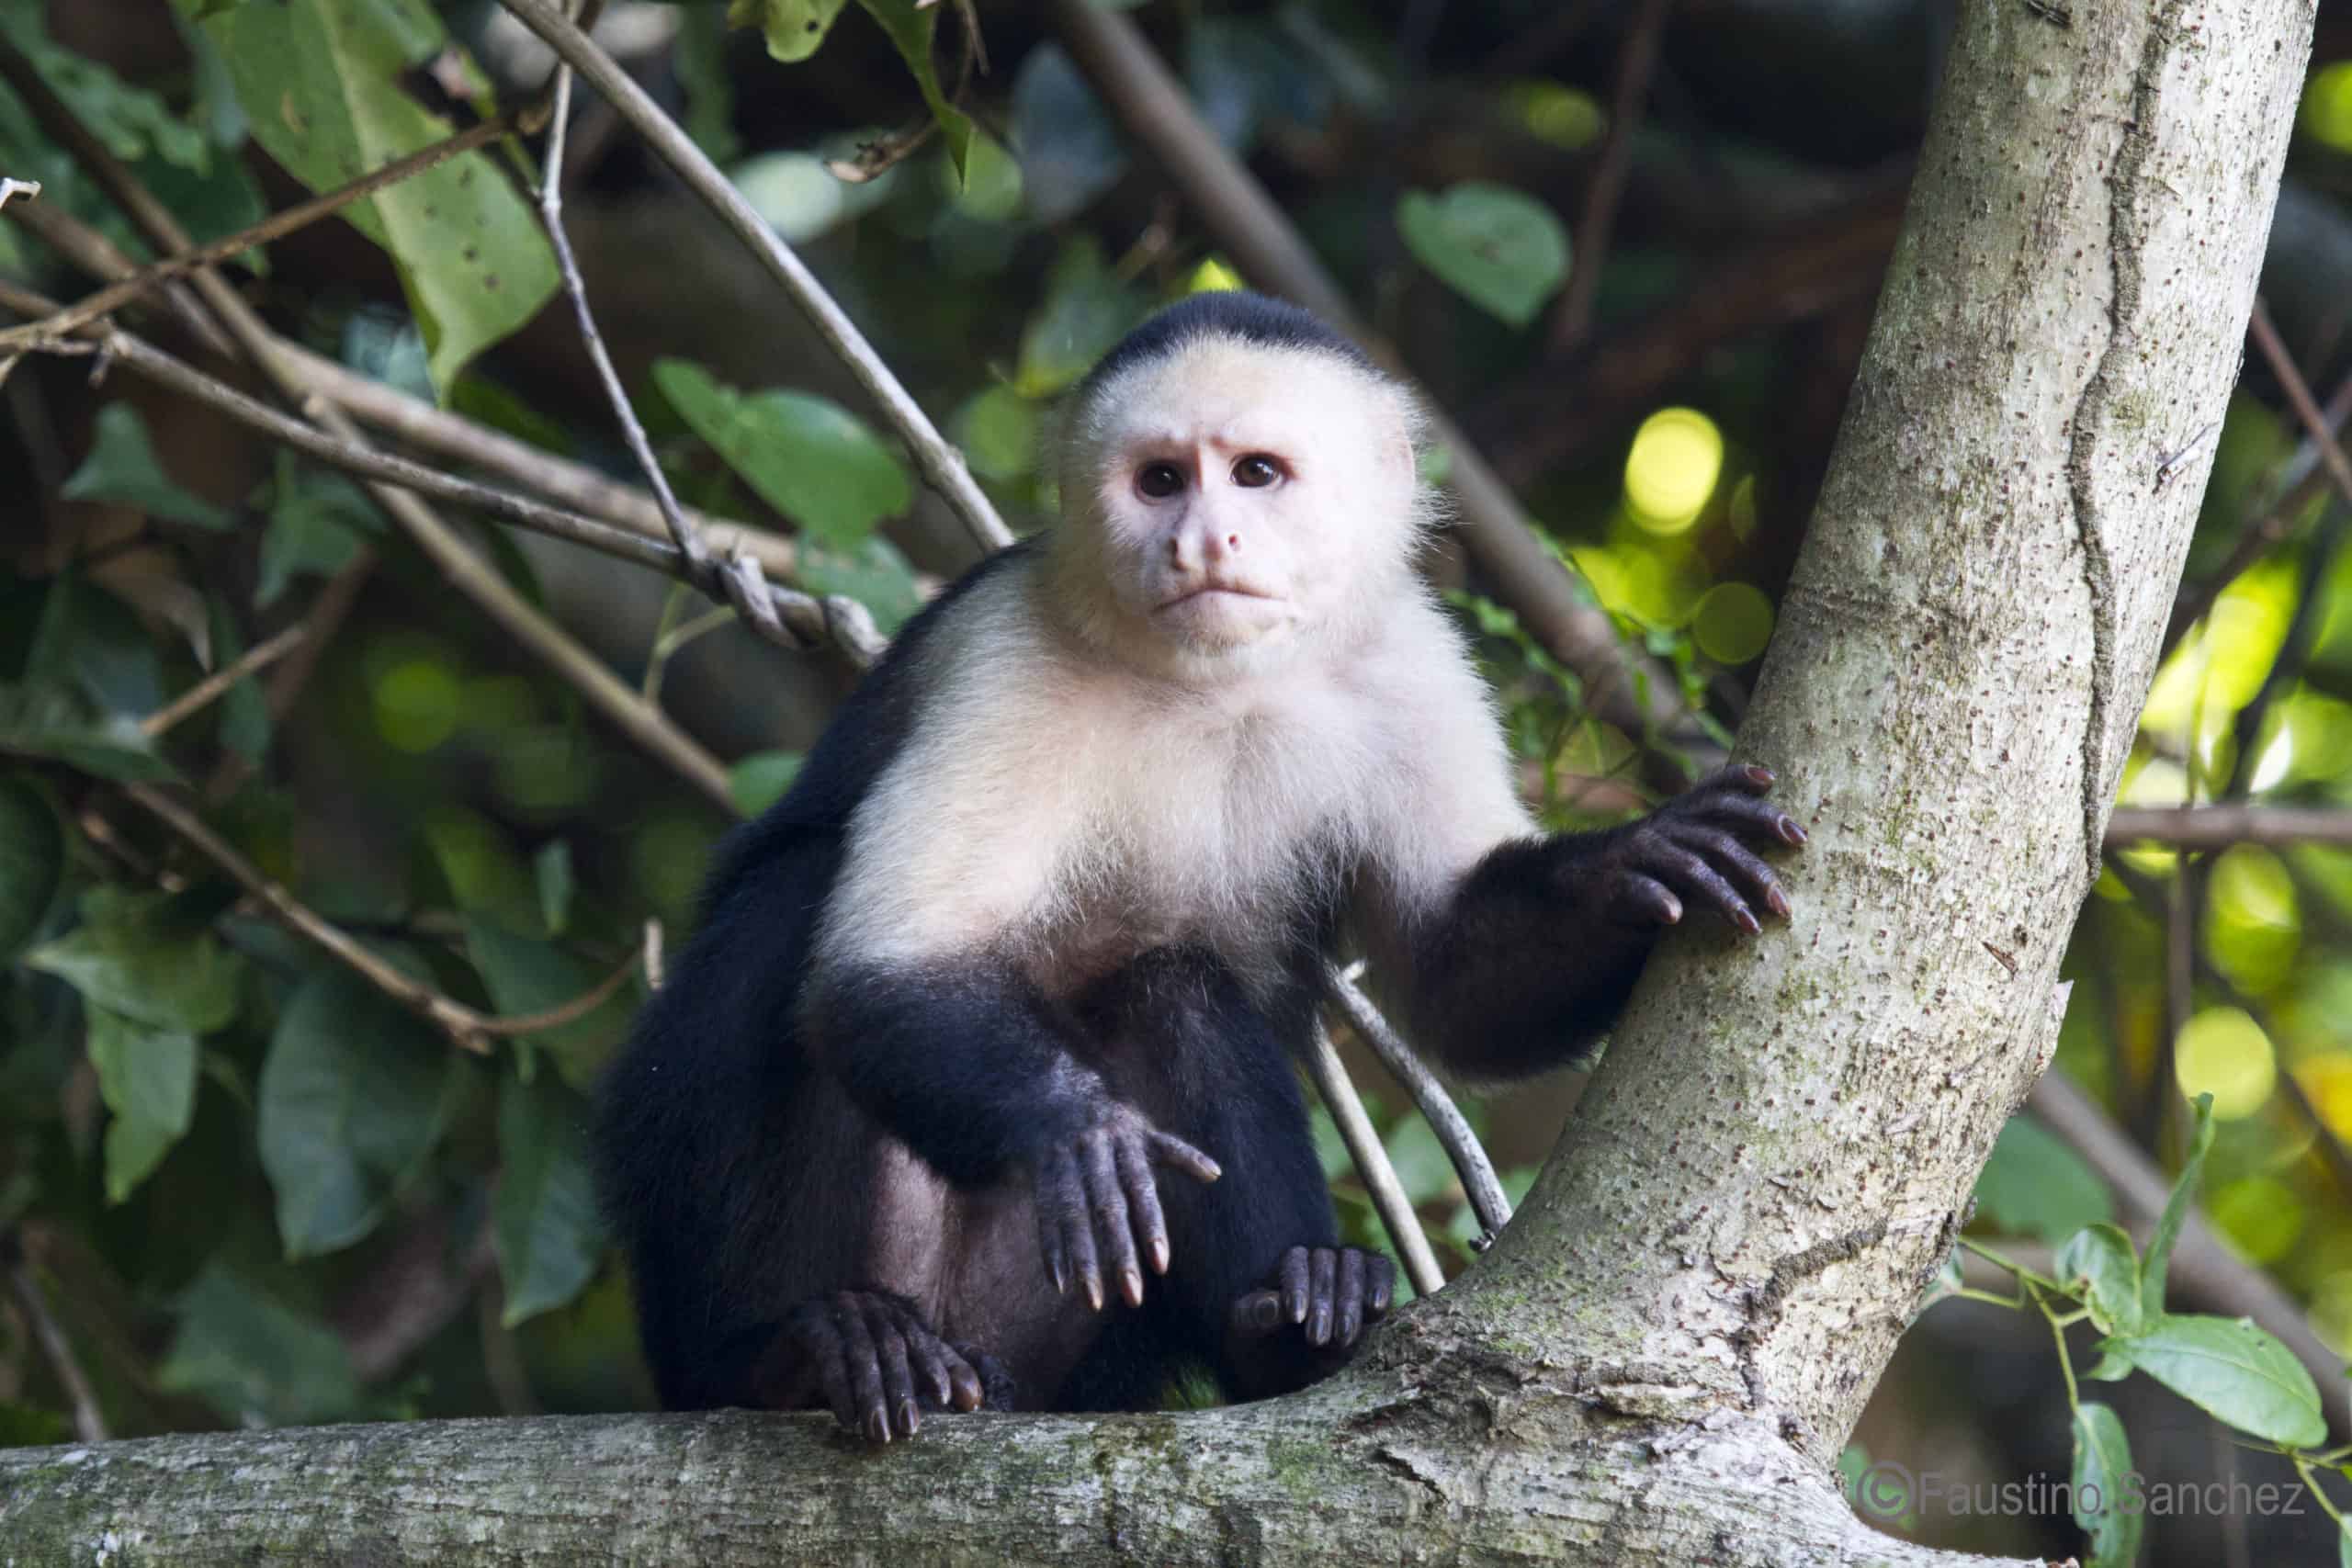 Coiba's capuchin monkeys